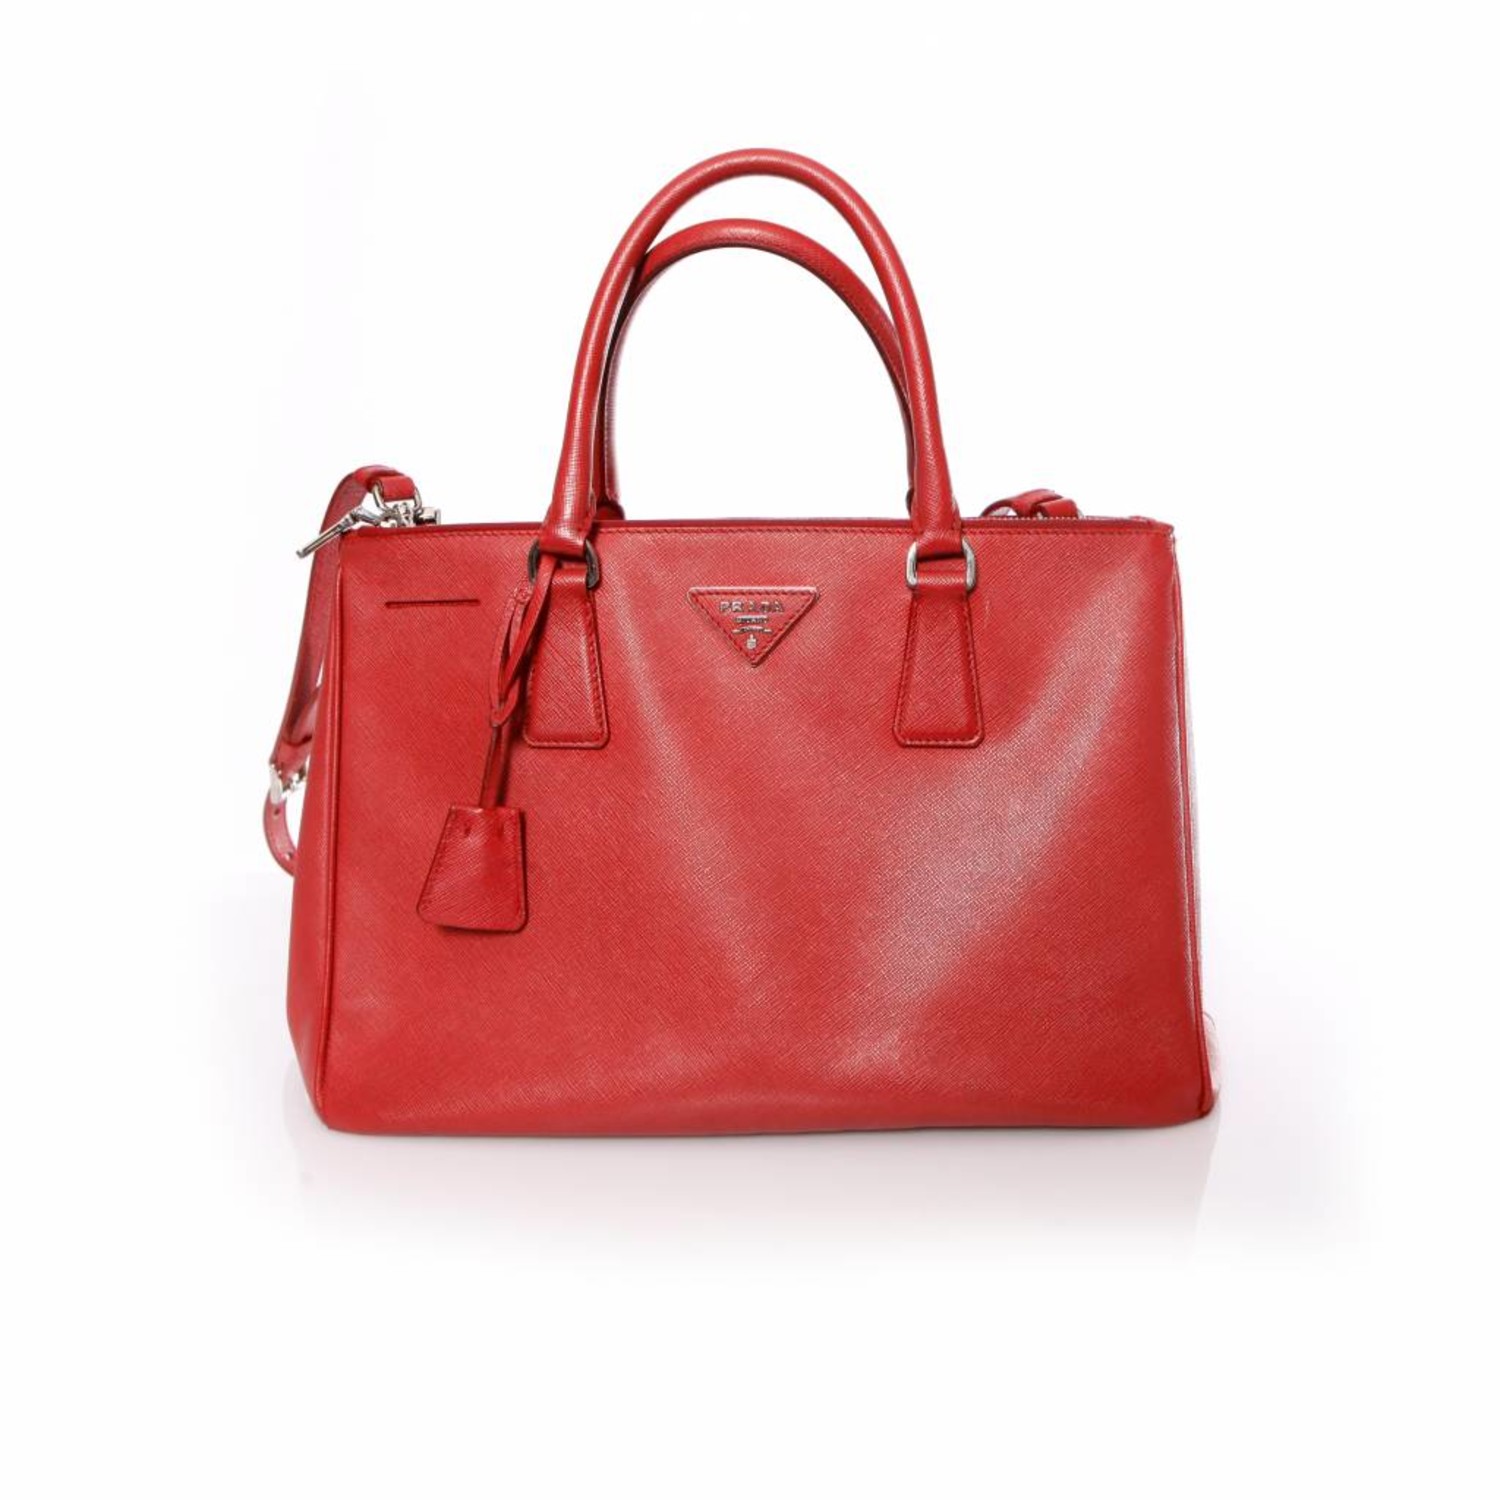 Prada, Galleria tote bag in red saffiano leather. - Unique